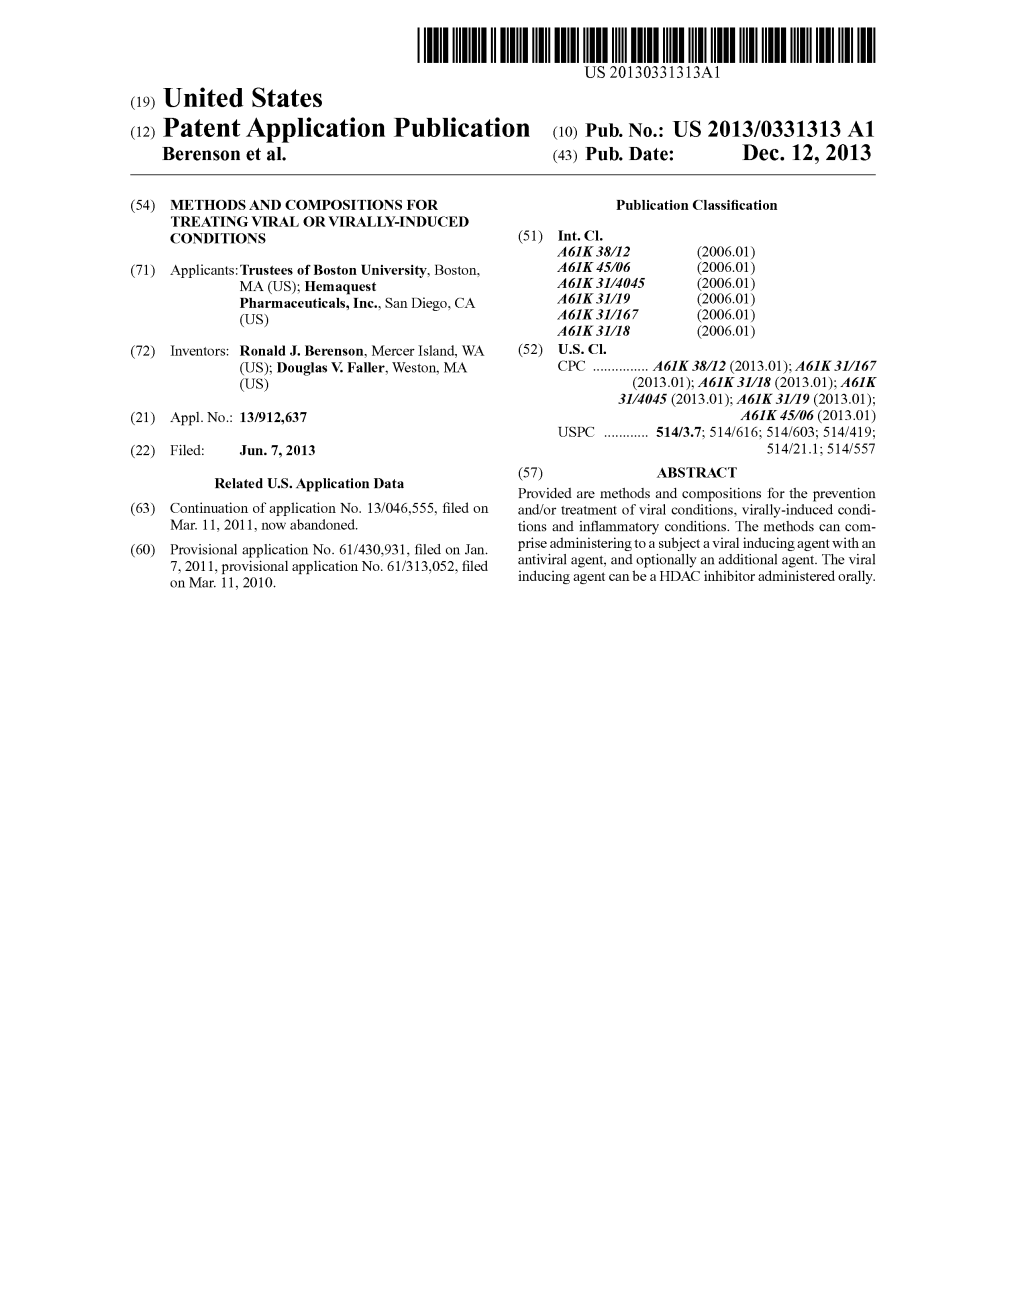 (12) Patent Application Publication (10) Pub. No.: US 2013/0331313 A1 Berenson Et Al